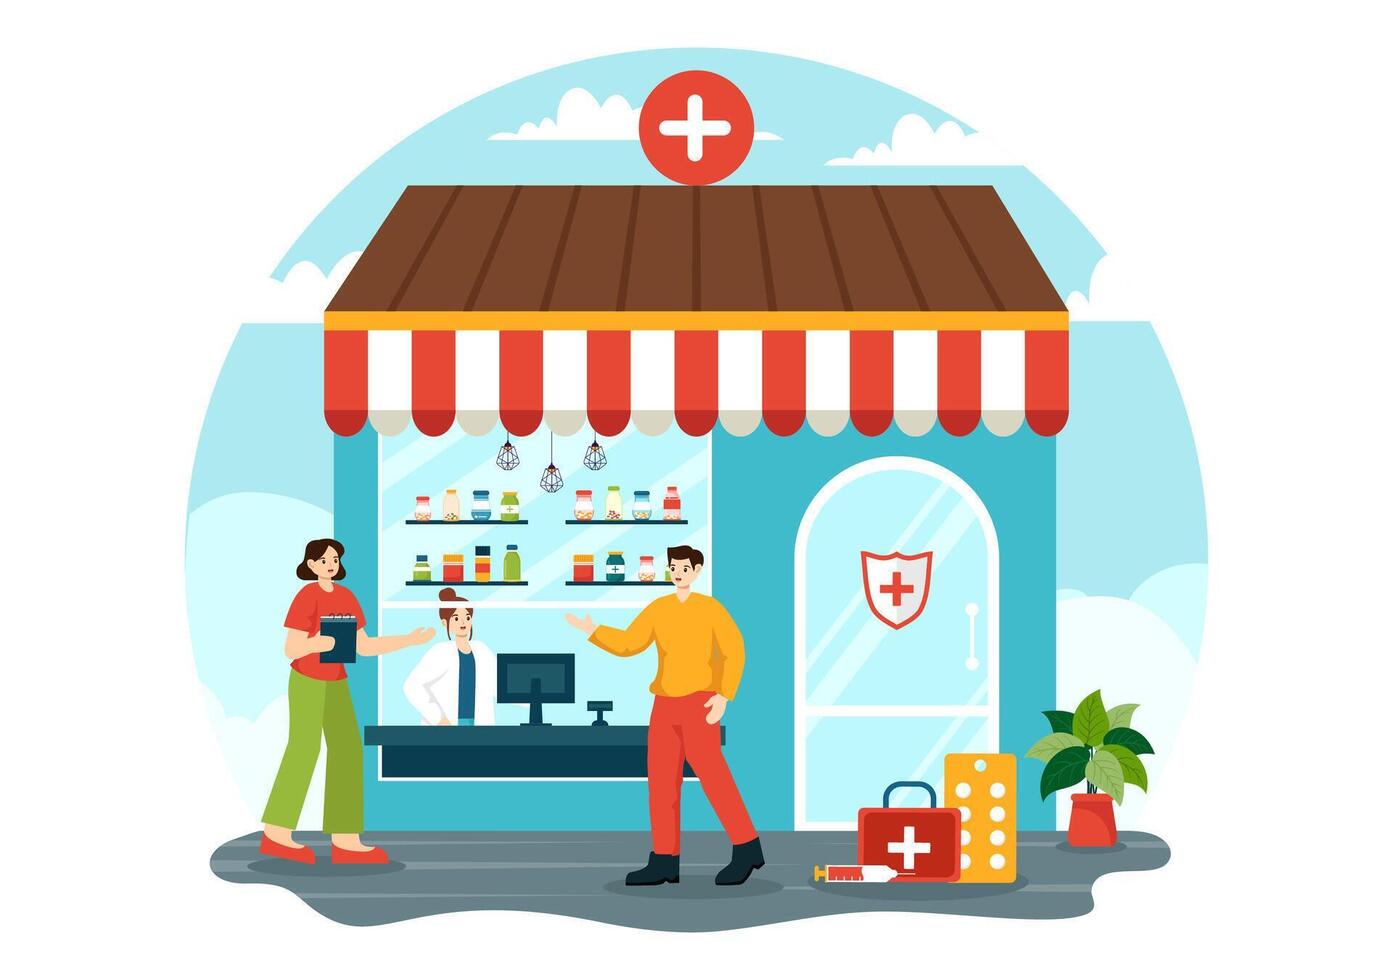 drogue boutique vecteur illustration avec magasin pour le vente de drogues, une pharmacien, médecine, capsules et bouteille dans soins de santé plat dessin animé Contexte